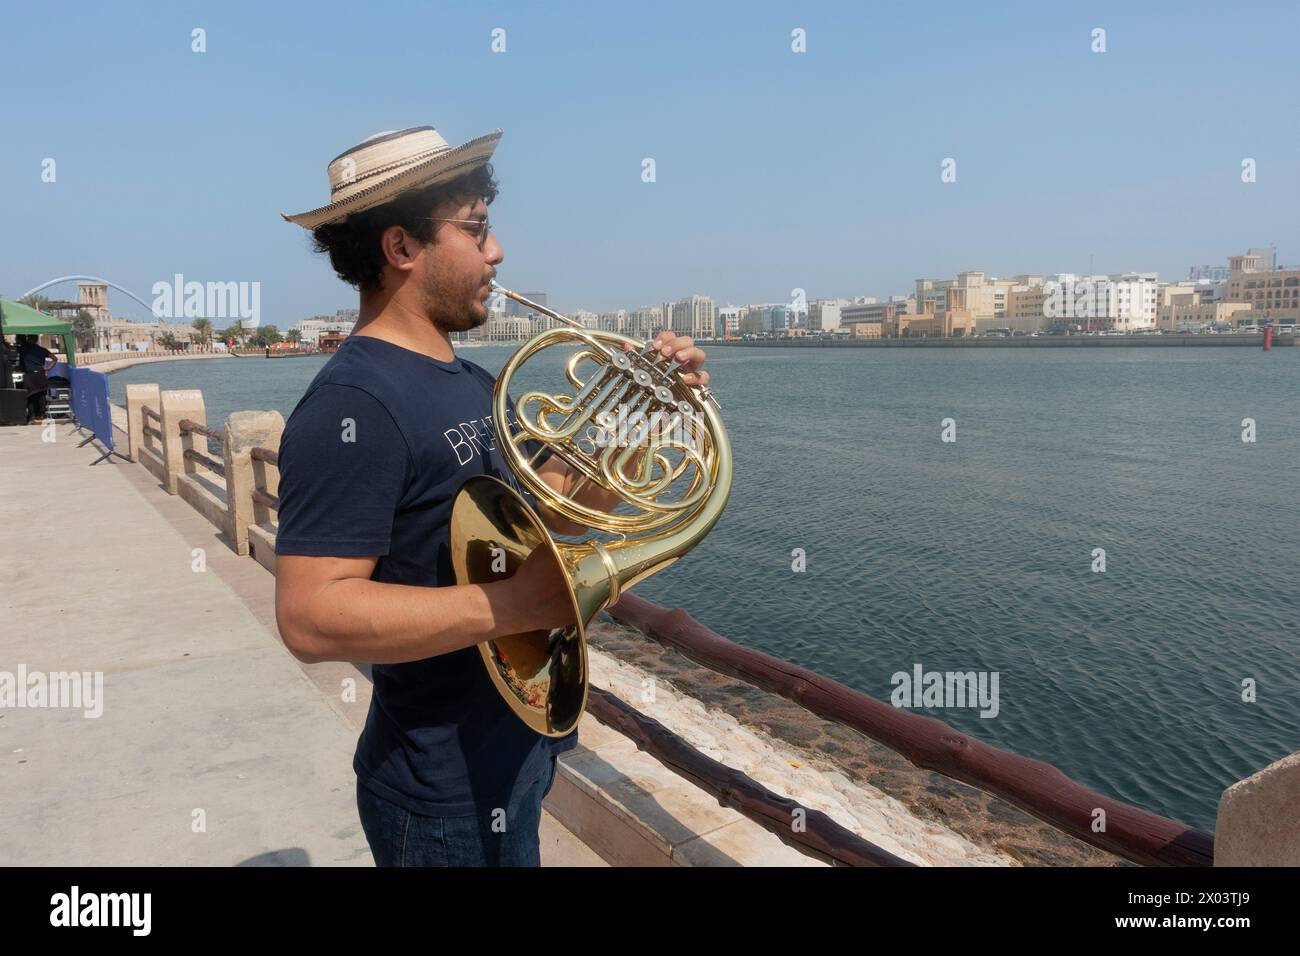 Jeune musicien jouant la corne française sur la rive de la crique dans le quartier historique d'Al Shindagha, Dubaï, Émirats arabes Unis. Banque D'Images